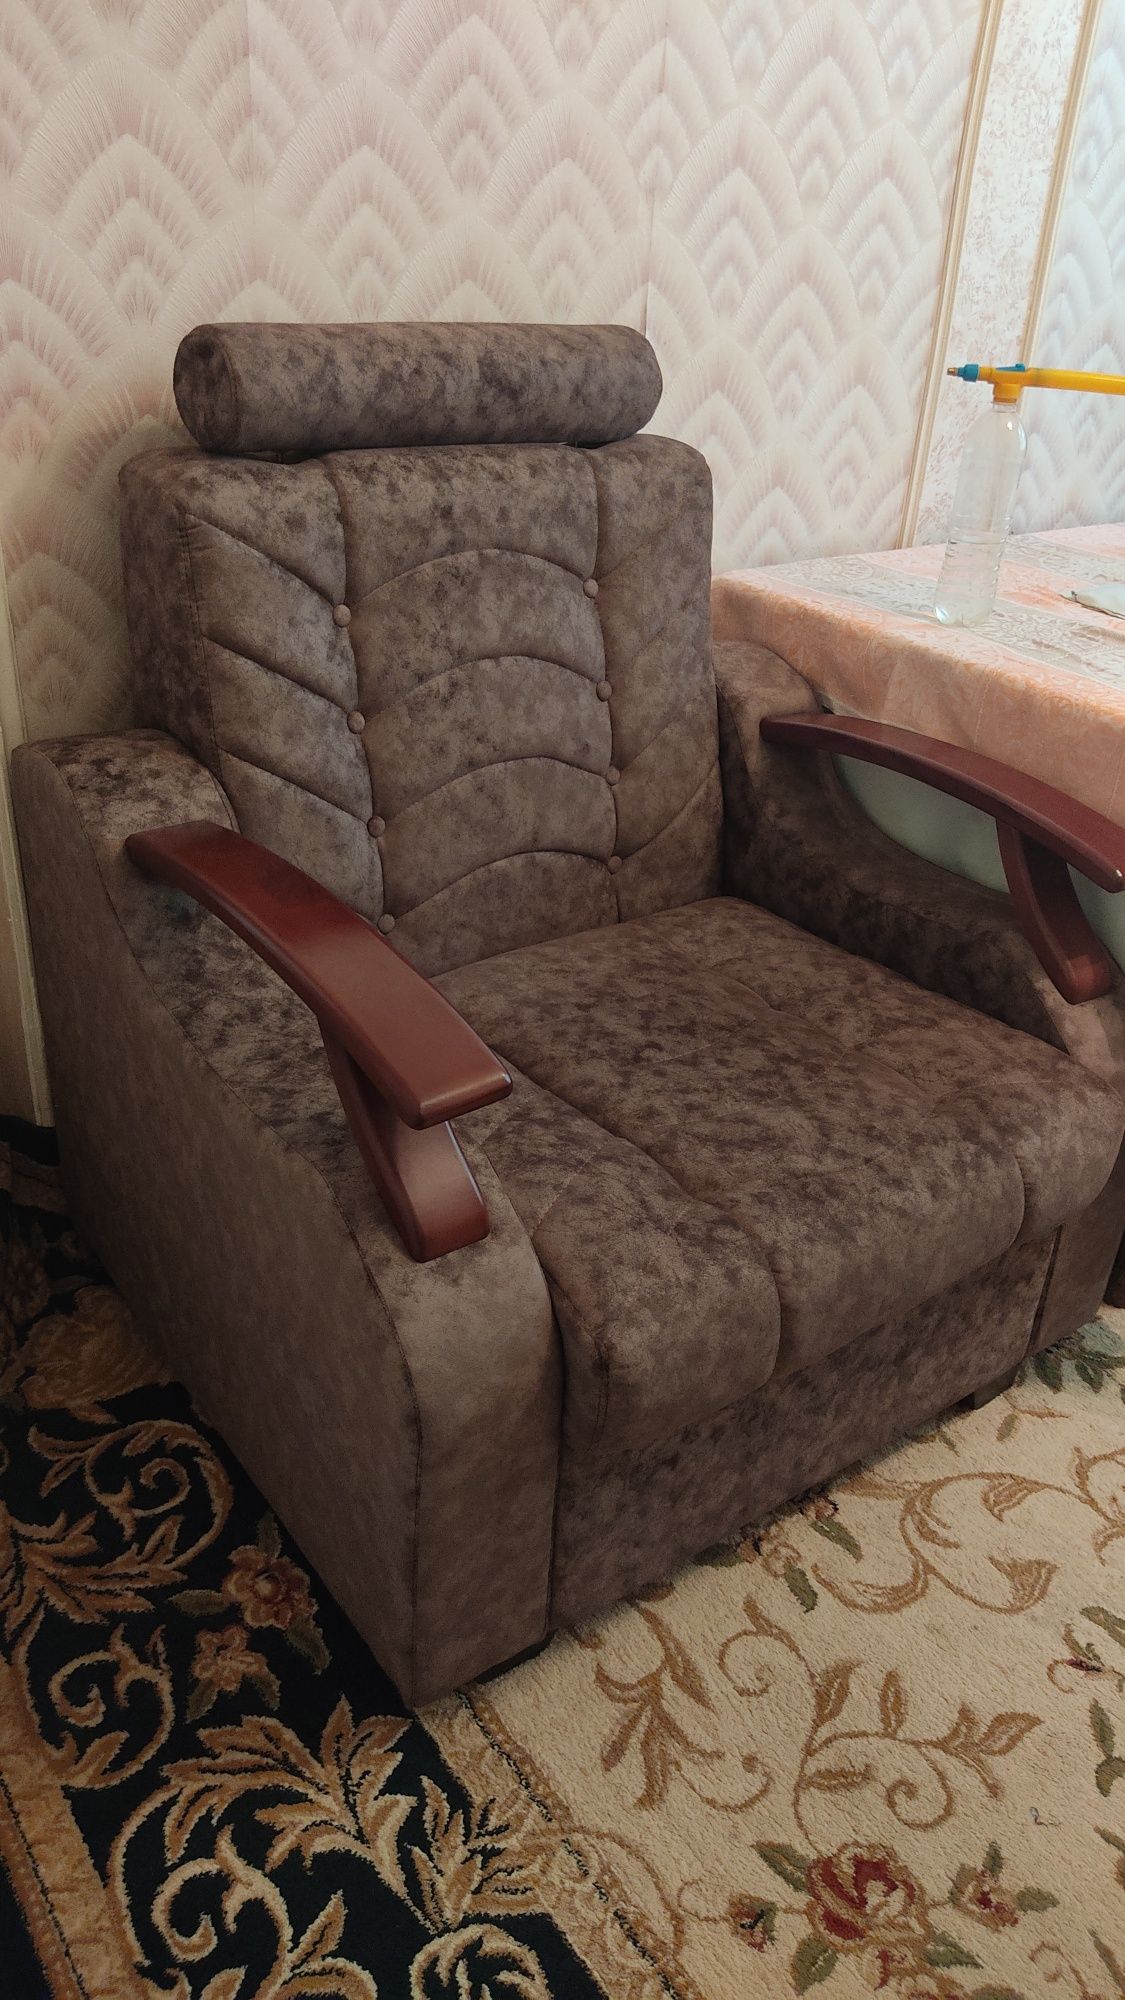 Продается диван и кресло коричнево серого цвета.